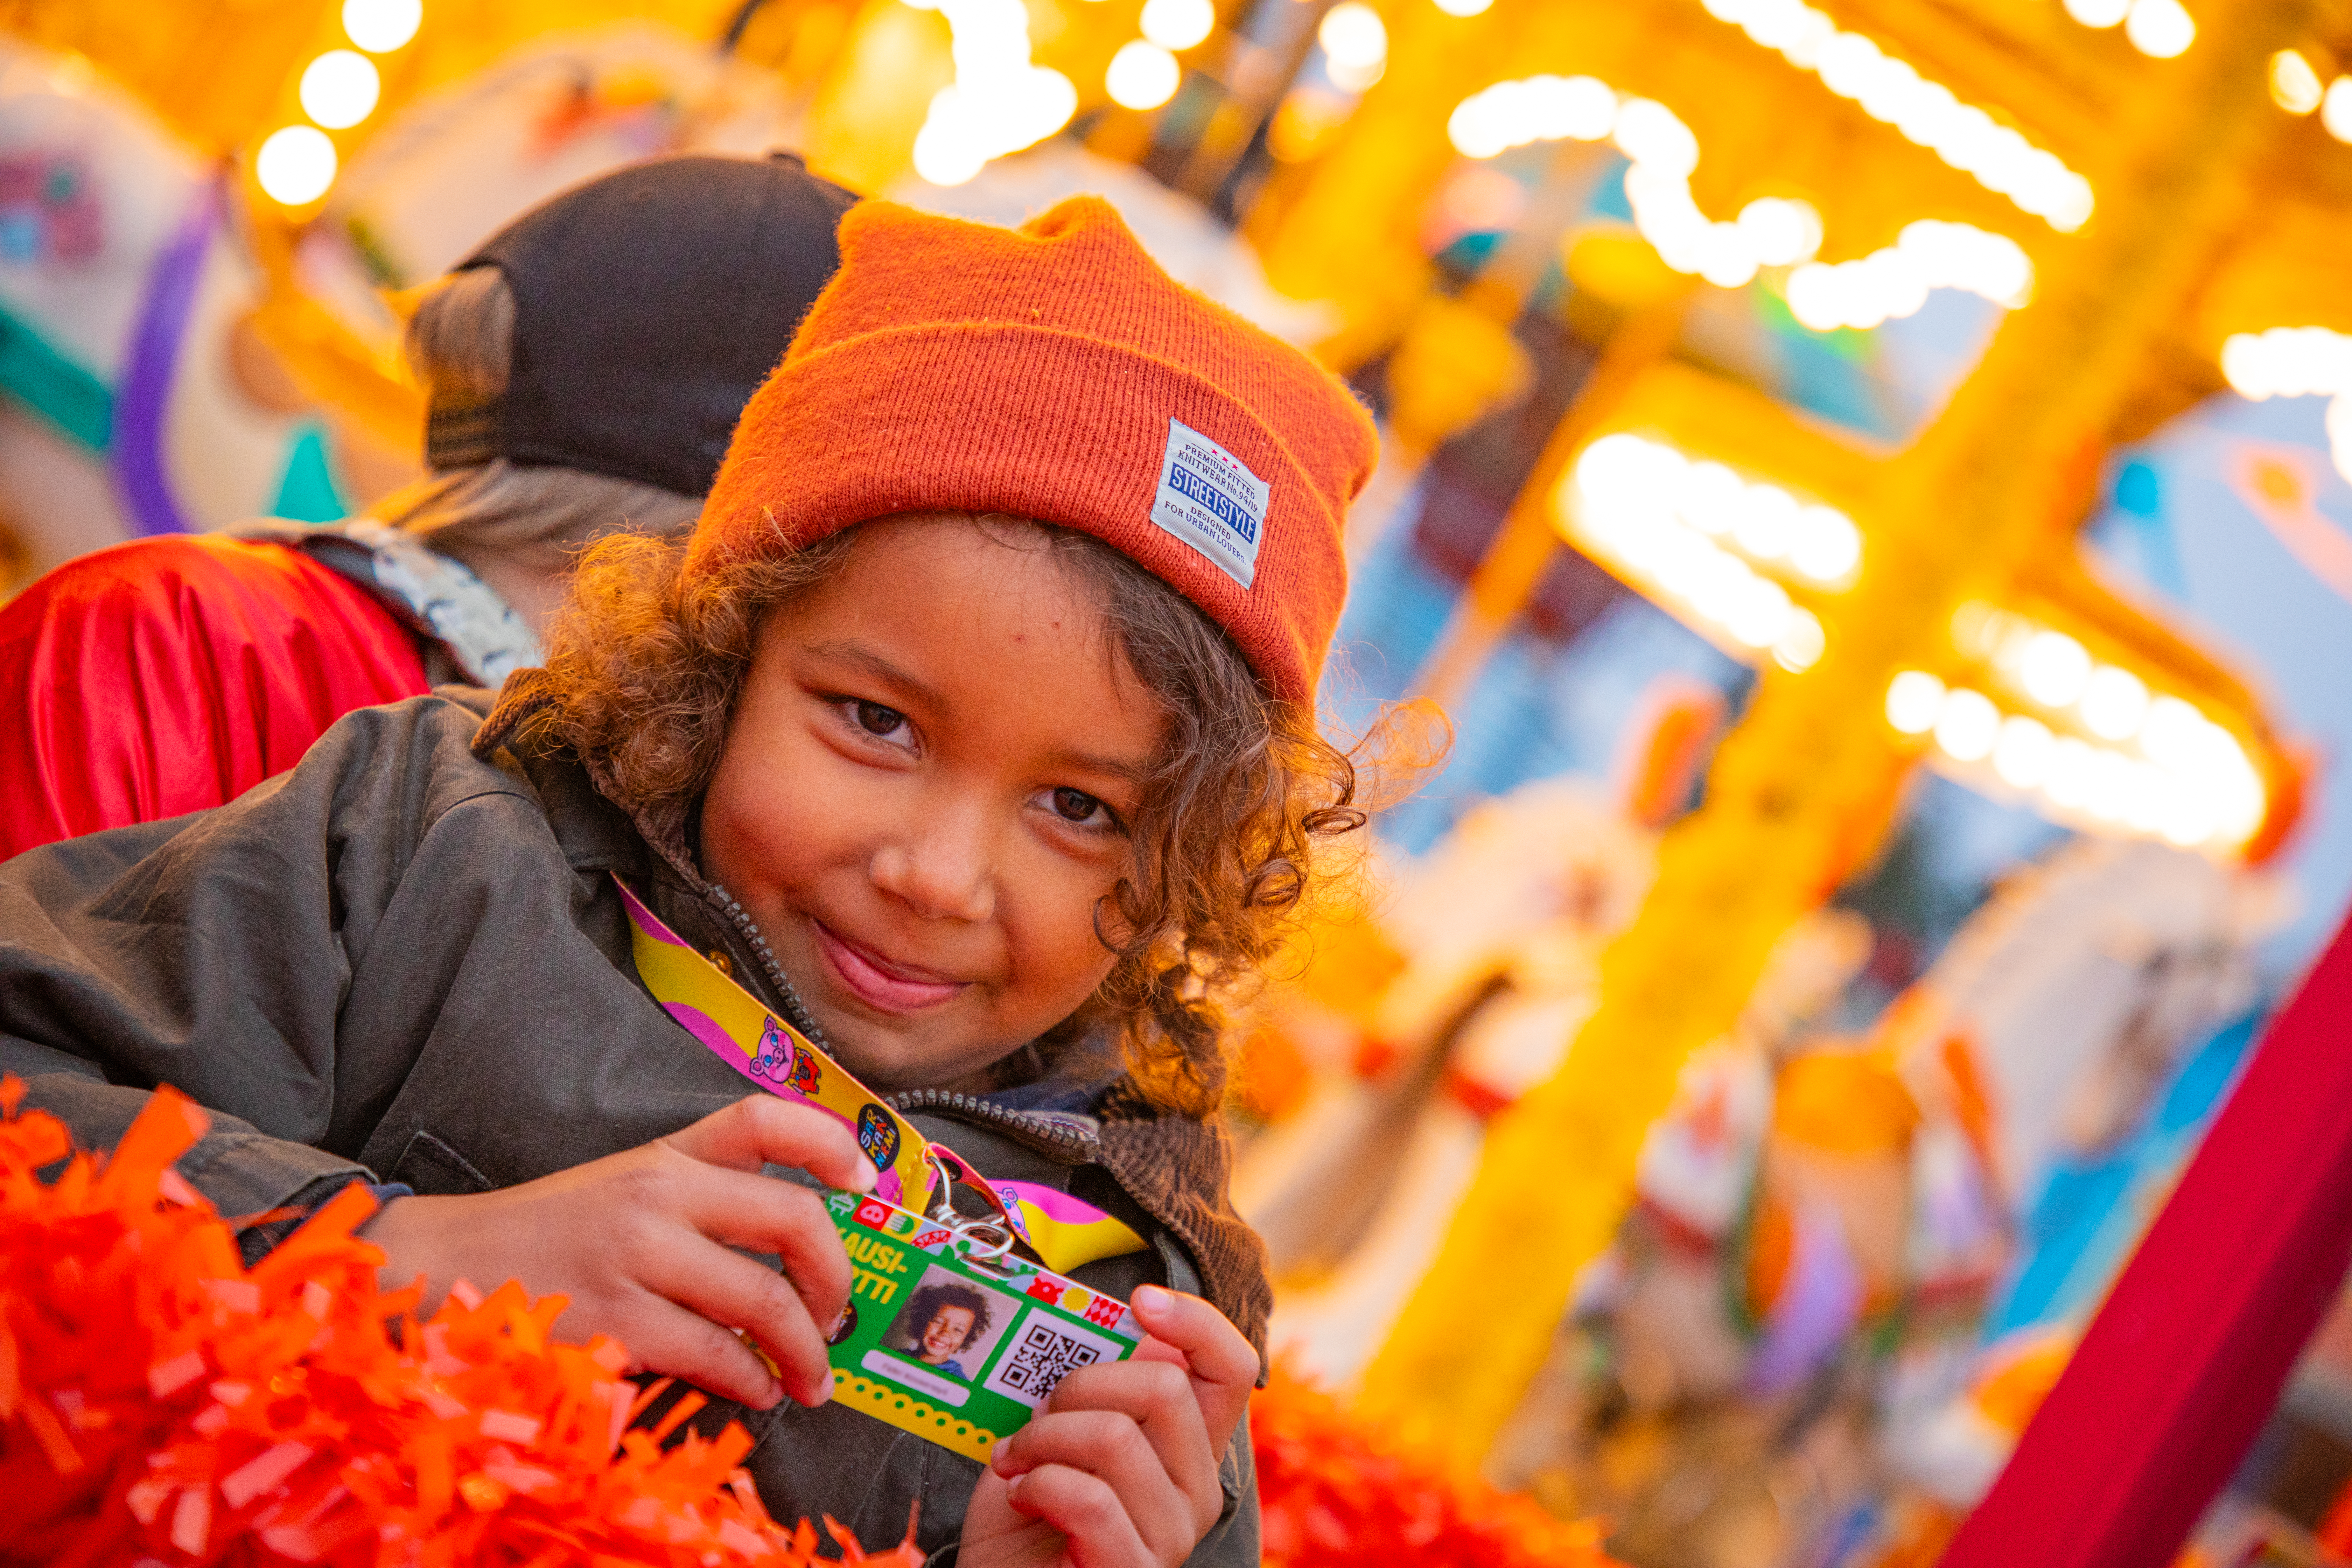 Ruskea, kiharahiuksinen lapsi oranssi pipo päässään pitelee onnellisena vuoden 2024 Kausikorttia Särkänniemen Karamelli-karusellin edustalla lämpimässä valaistuksessa.